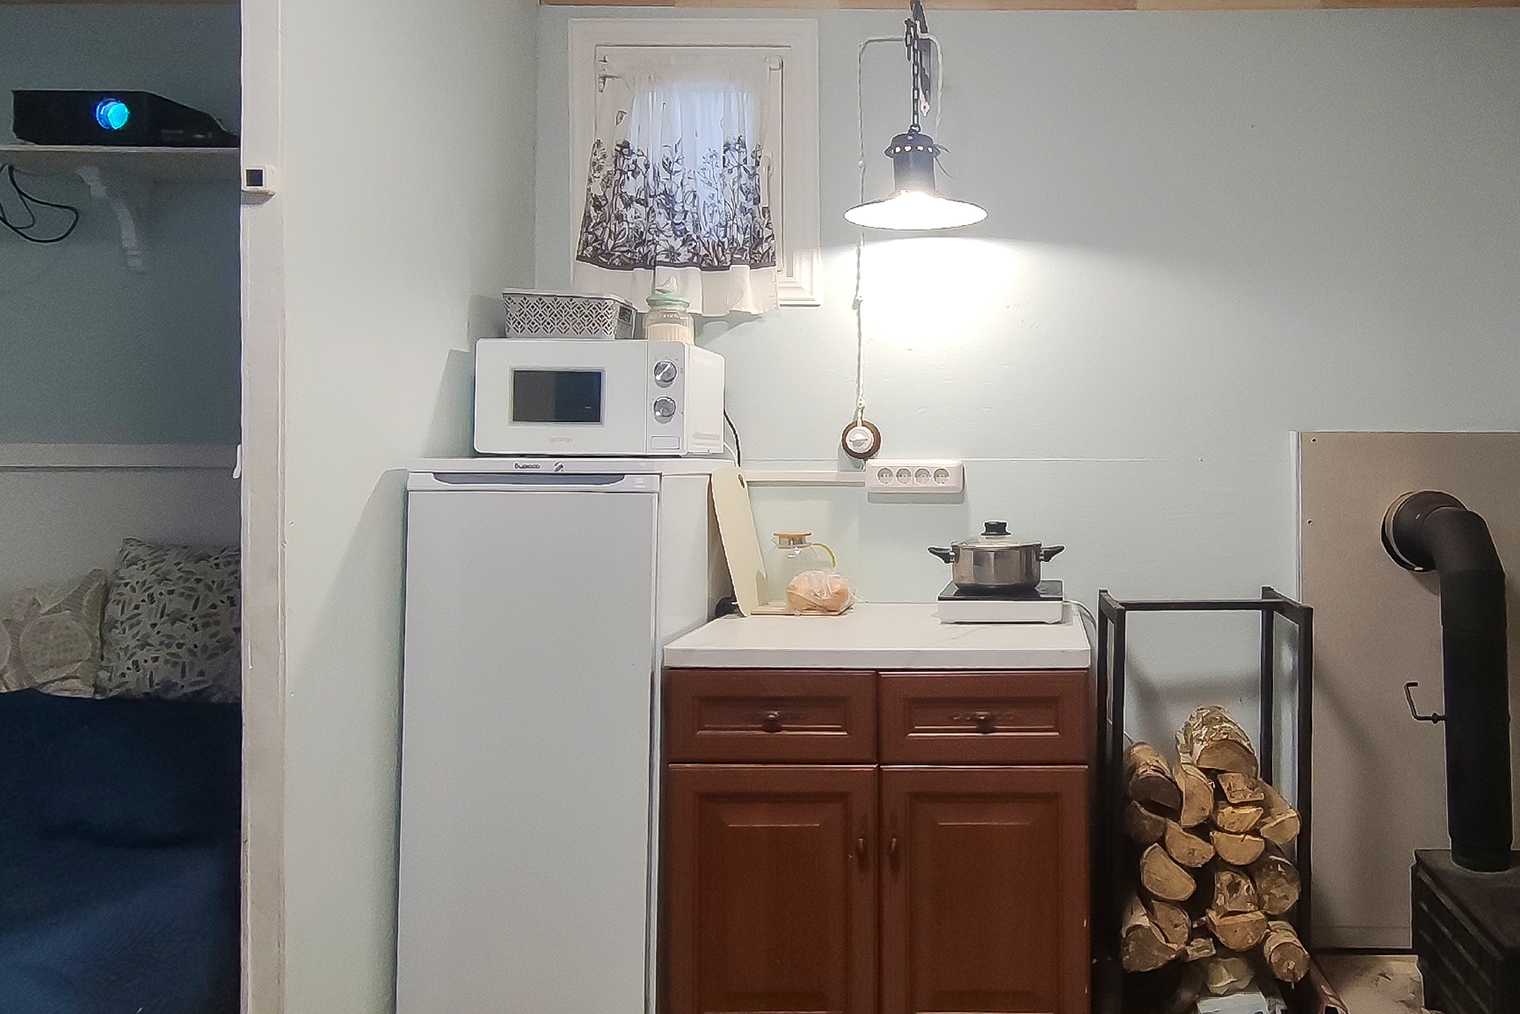 Напольный шкафчик на кухне симпатичный и функциональный. Слева видно, как стоит проектор в спальне